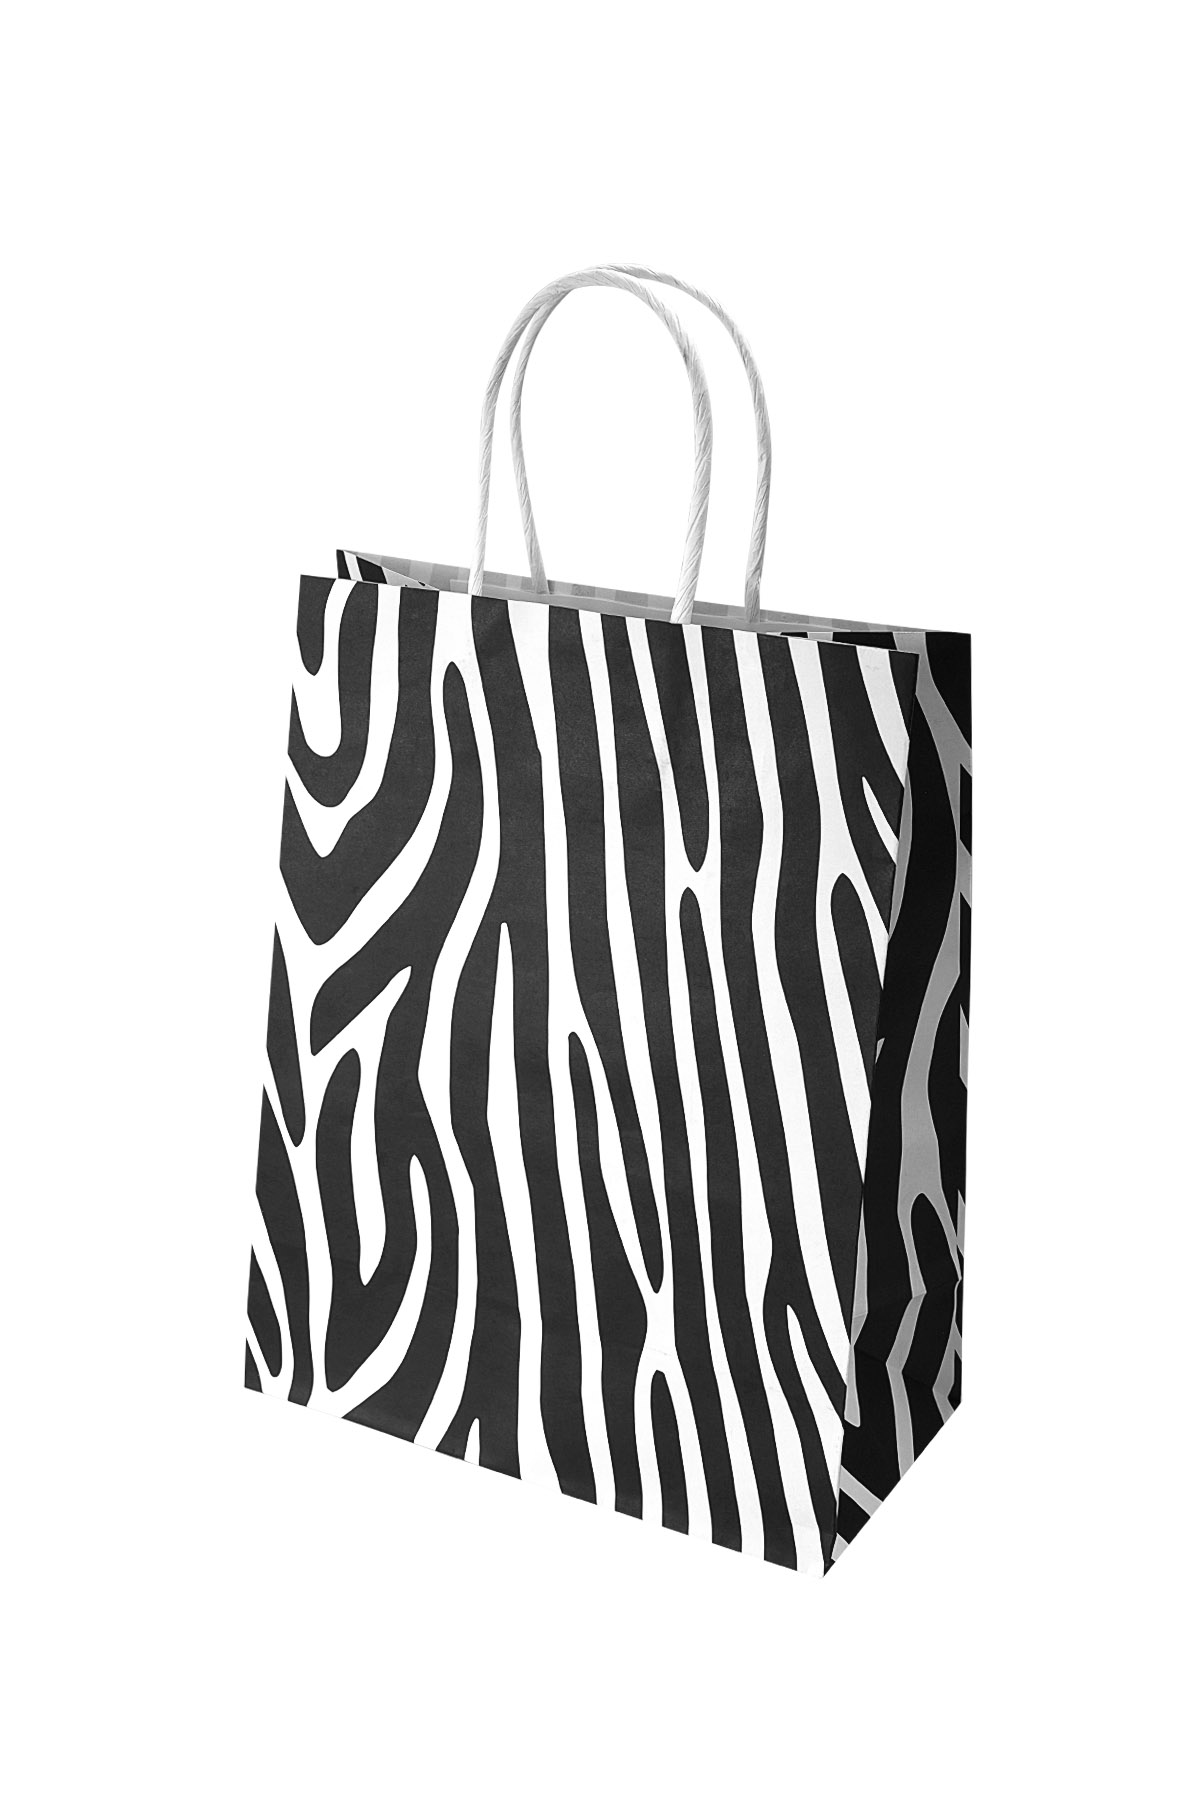 Tüten Zebra 50 Stück - schwarz/weißes Papier 